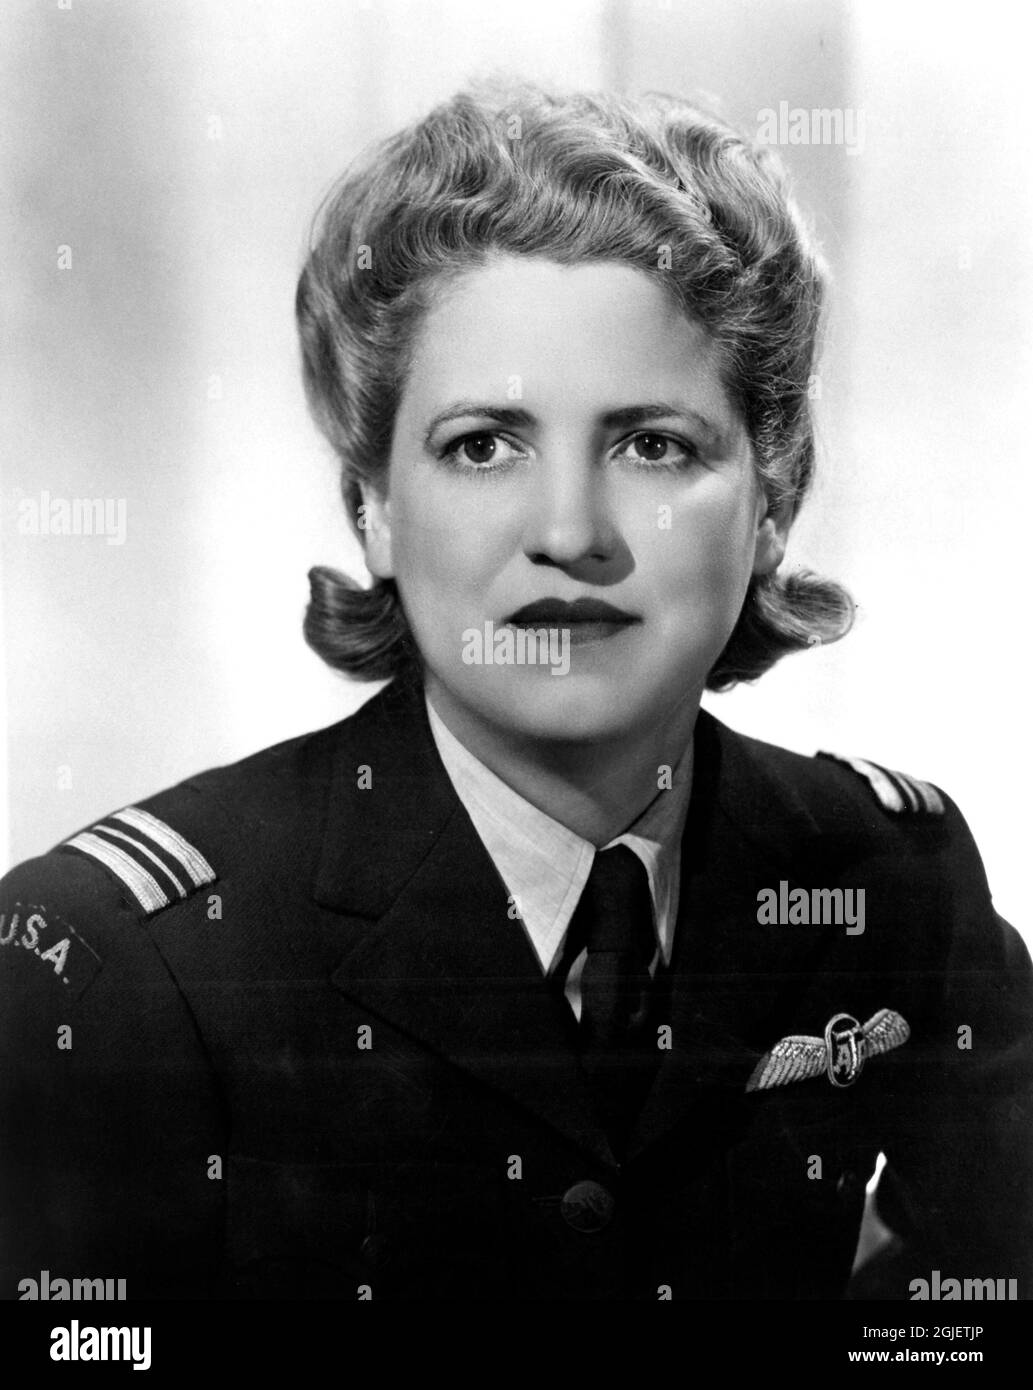 Porträt der amerikanischen Luftfahrtpionierin Jacqueline Cochran (1906-1980) in der Lufttransport-Hilfsuniform, 1942. Stockfoto